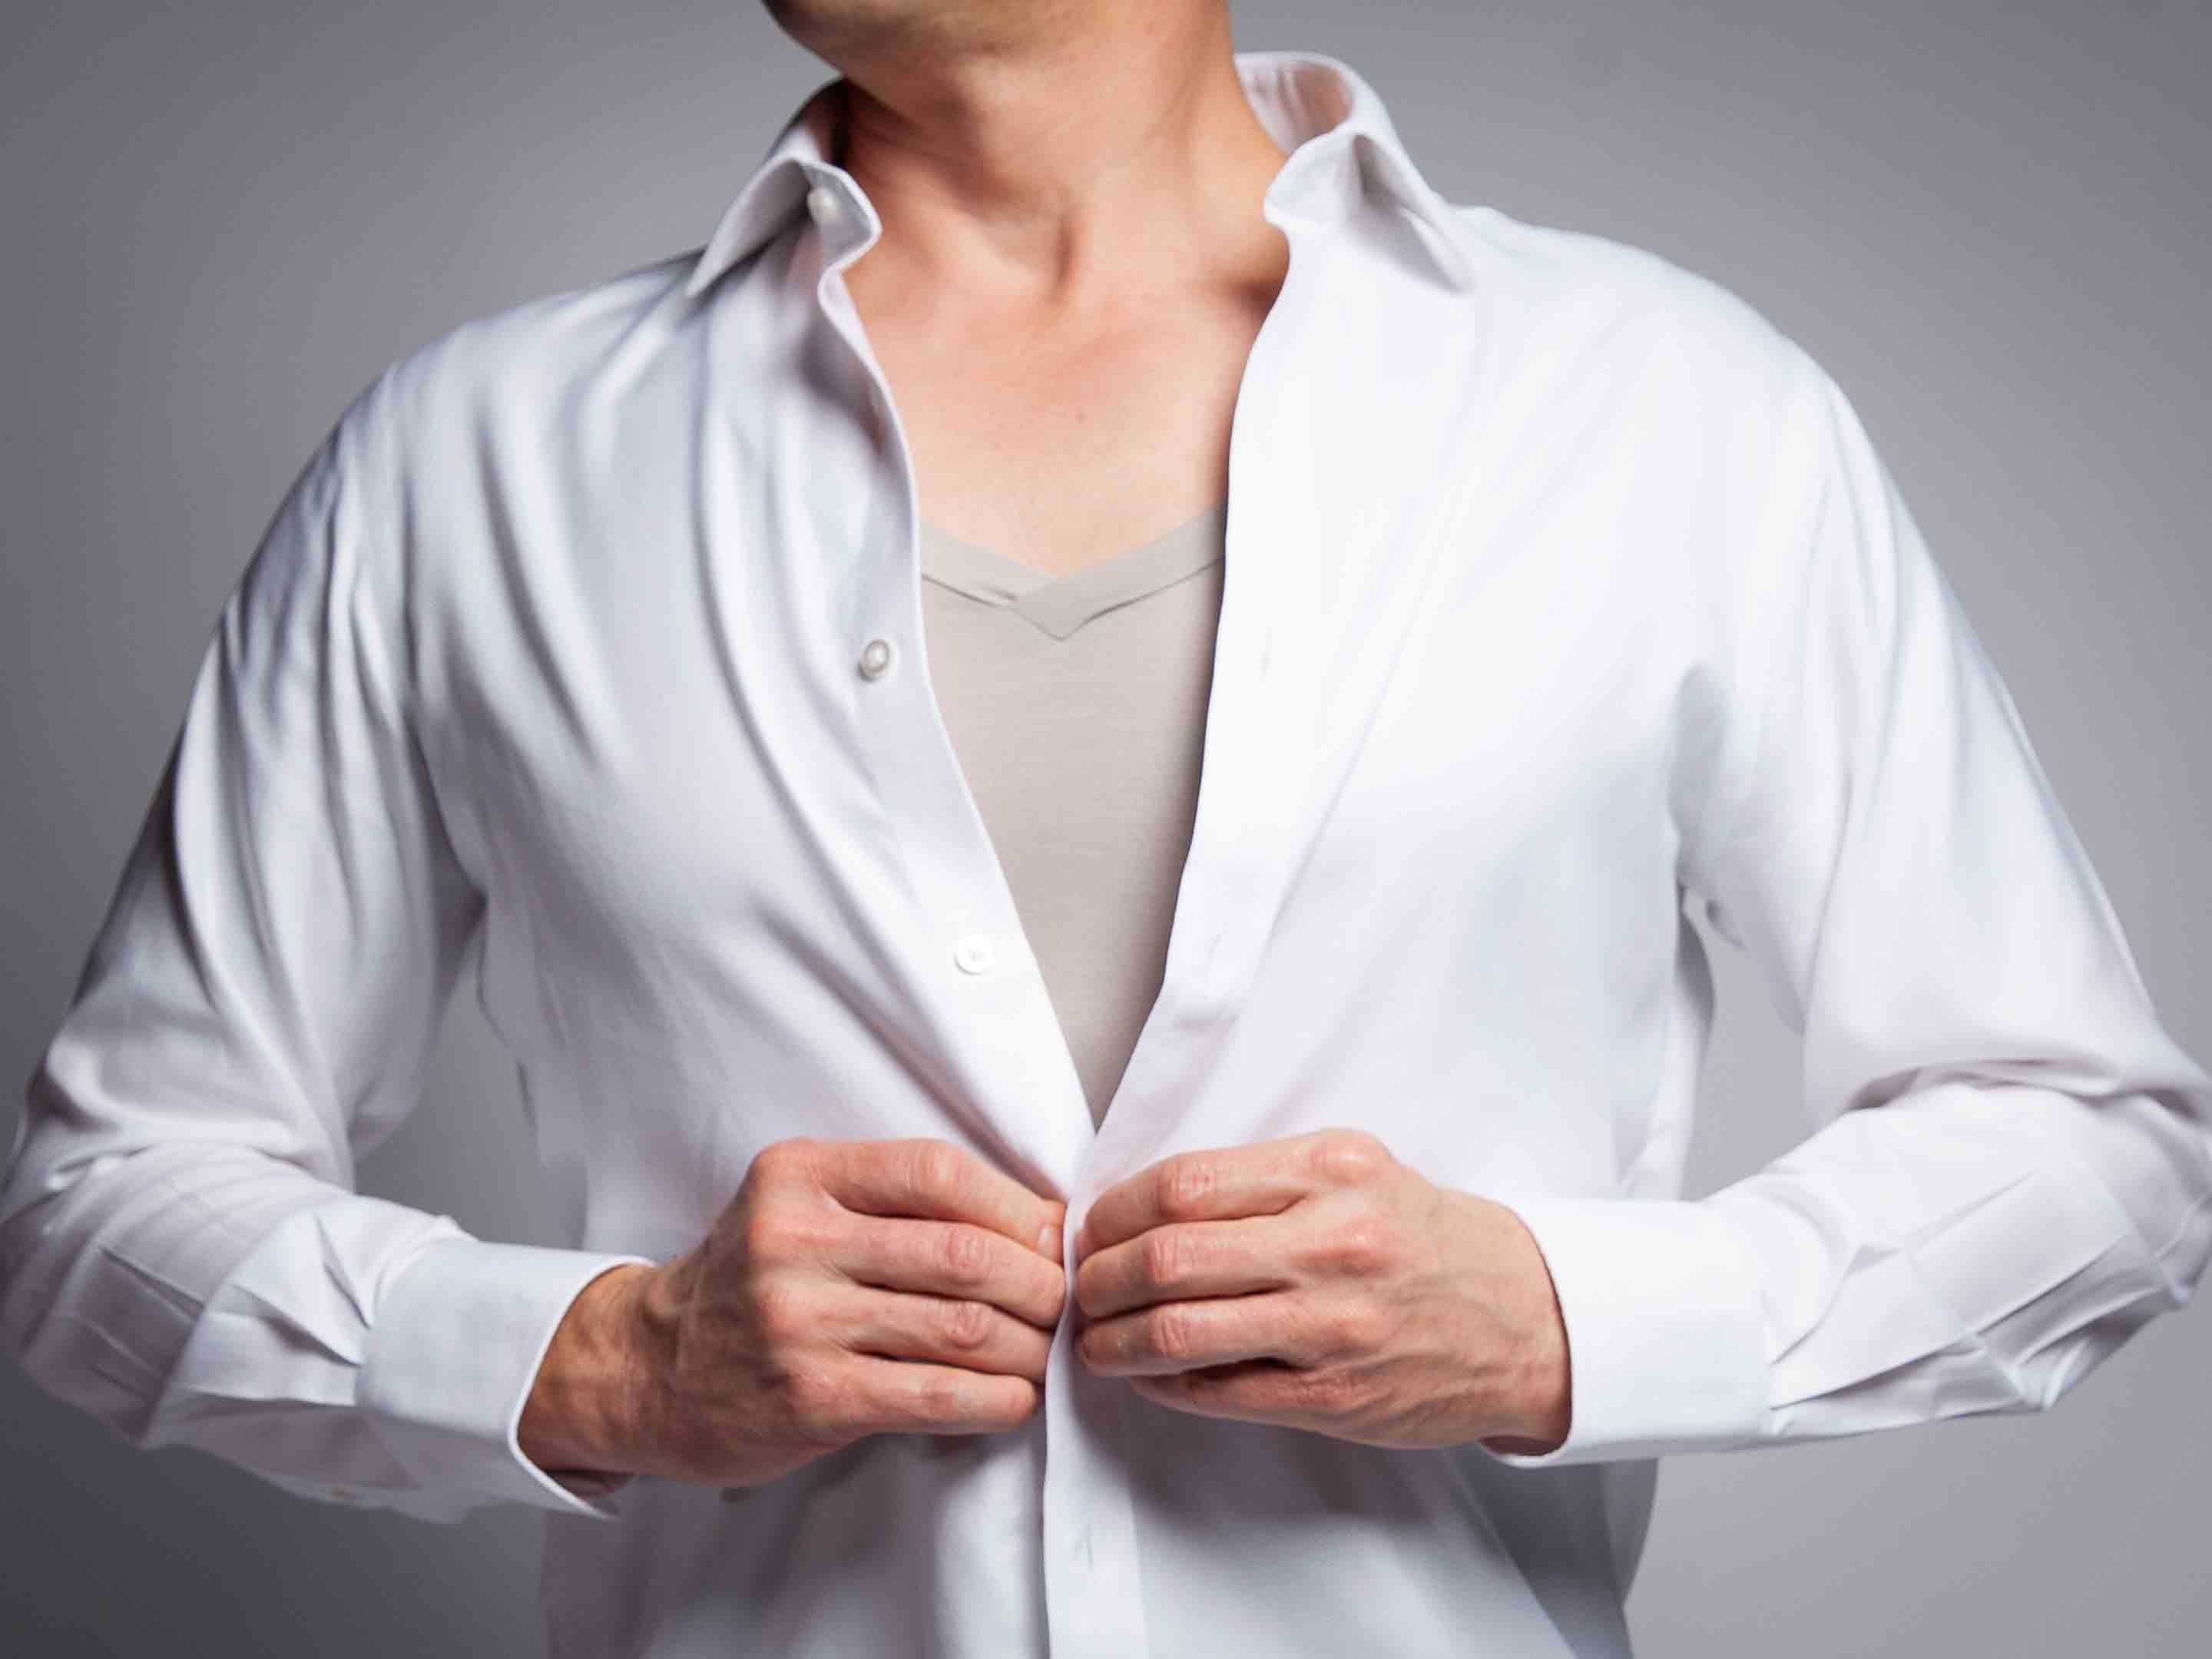 Top tips for wearing an undershirt | Robert Owen® UK – Robert Owen ...